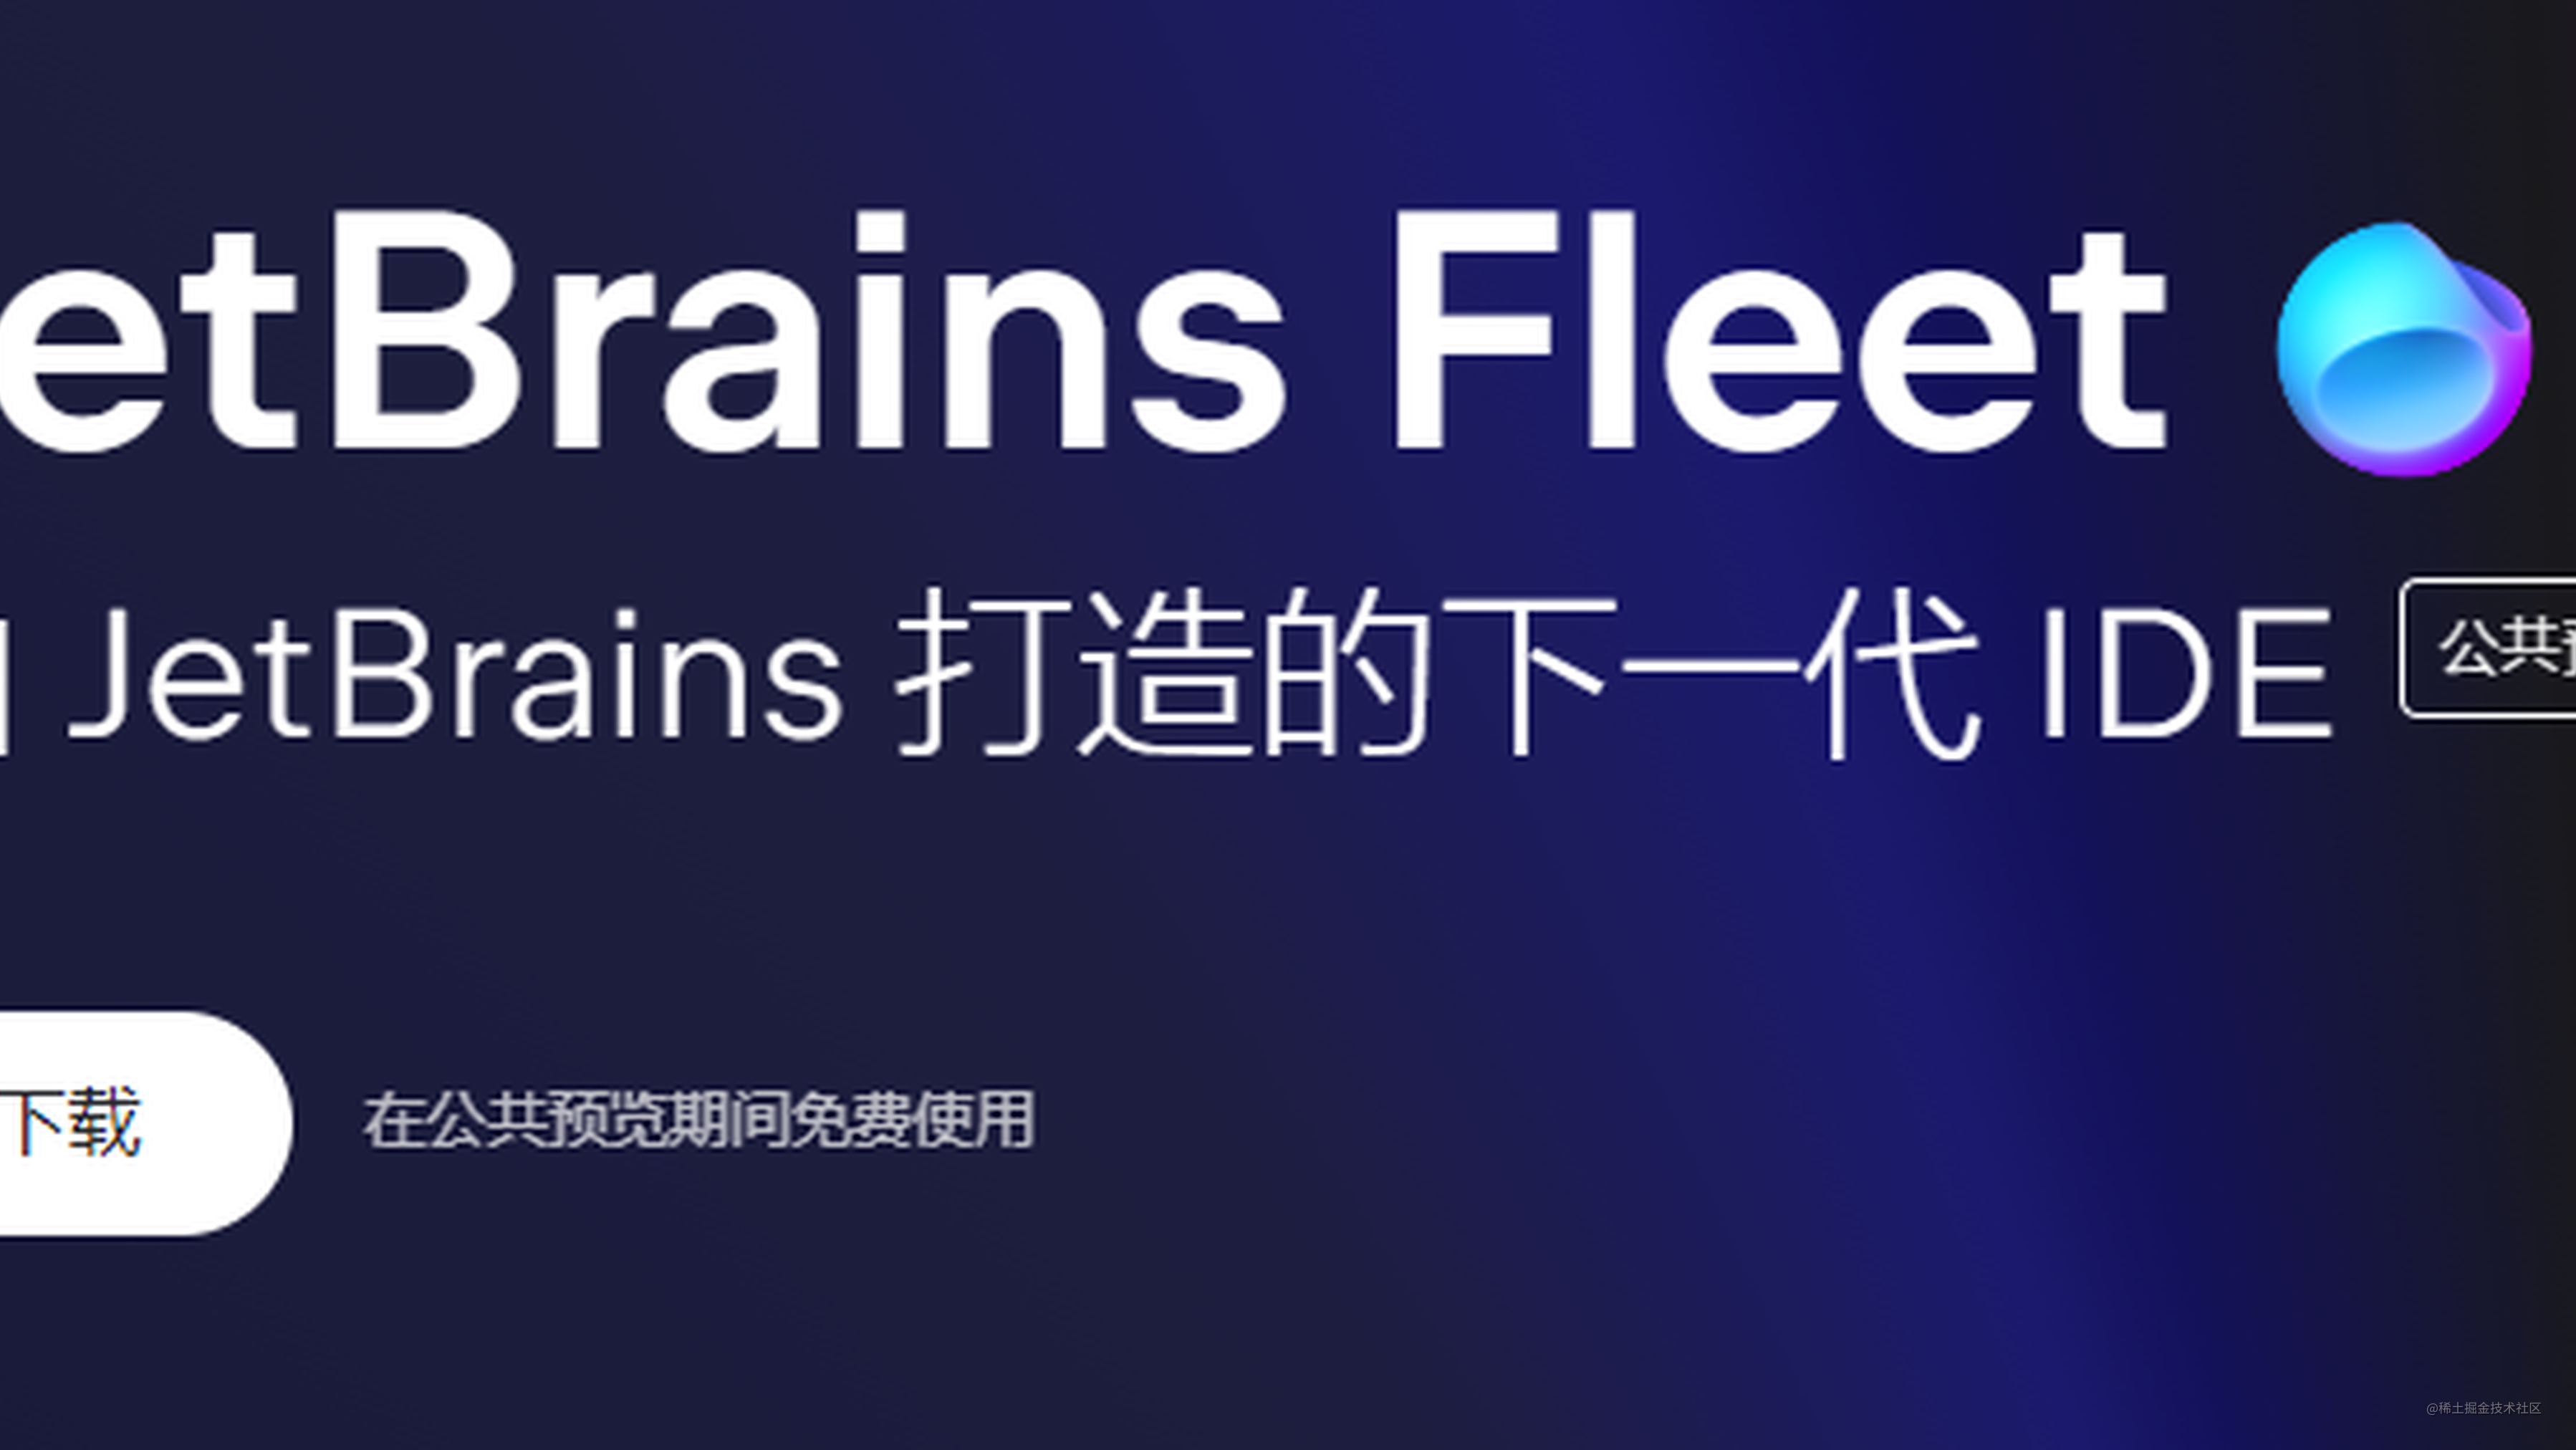 Fleet 公测版已放出，Jetbrains 下一代分布式代码编辑器抢先体验